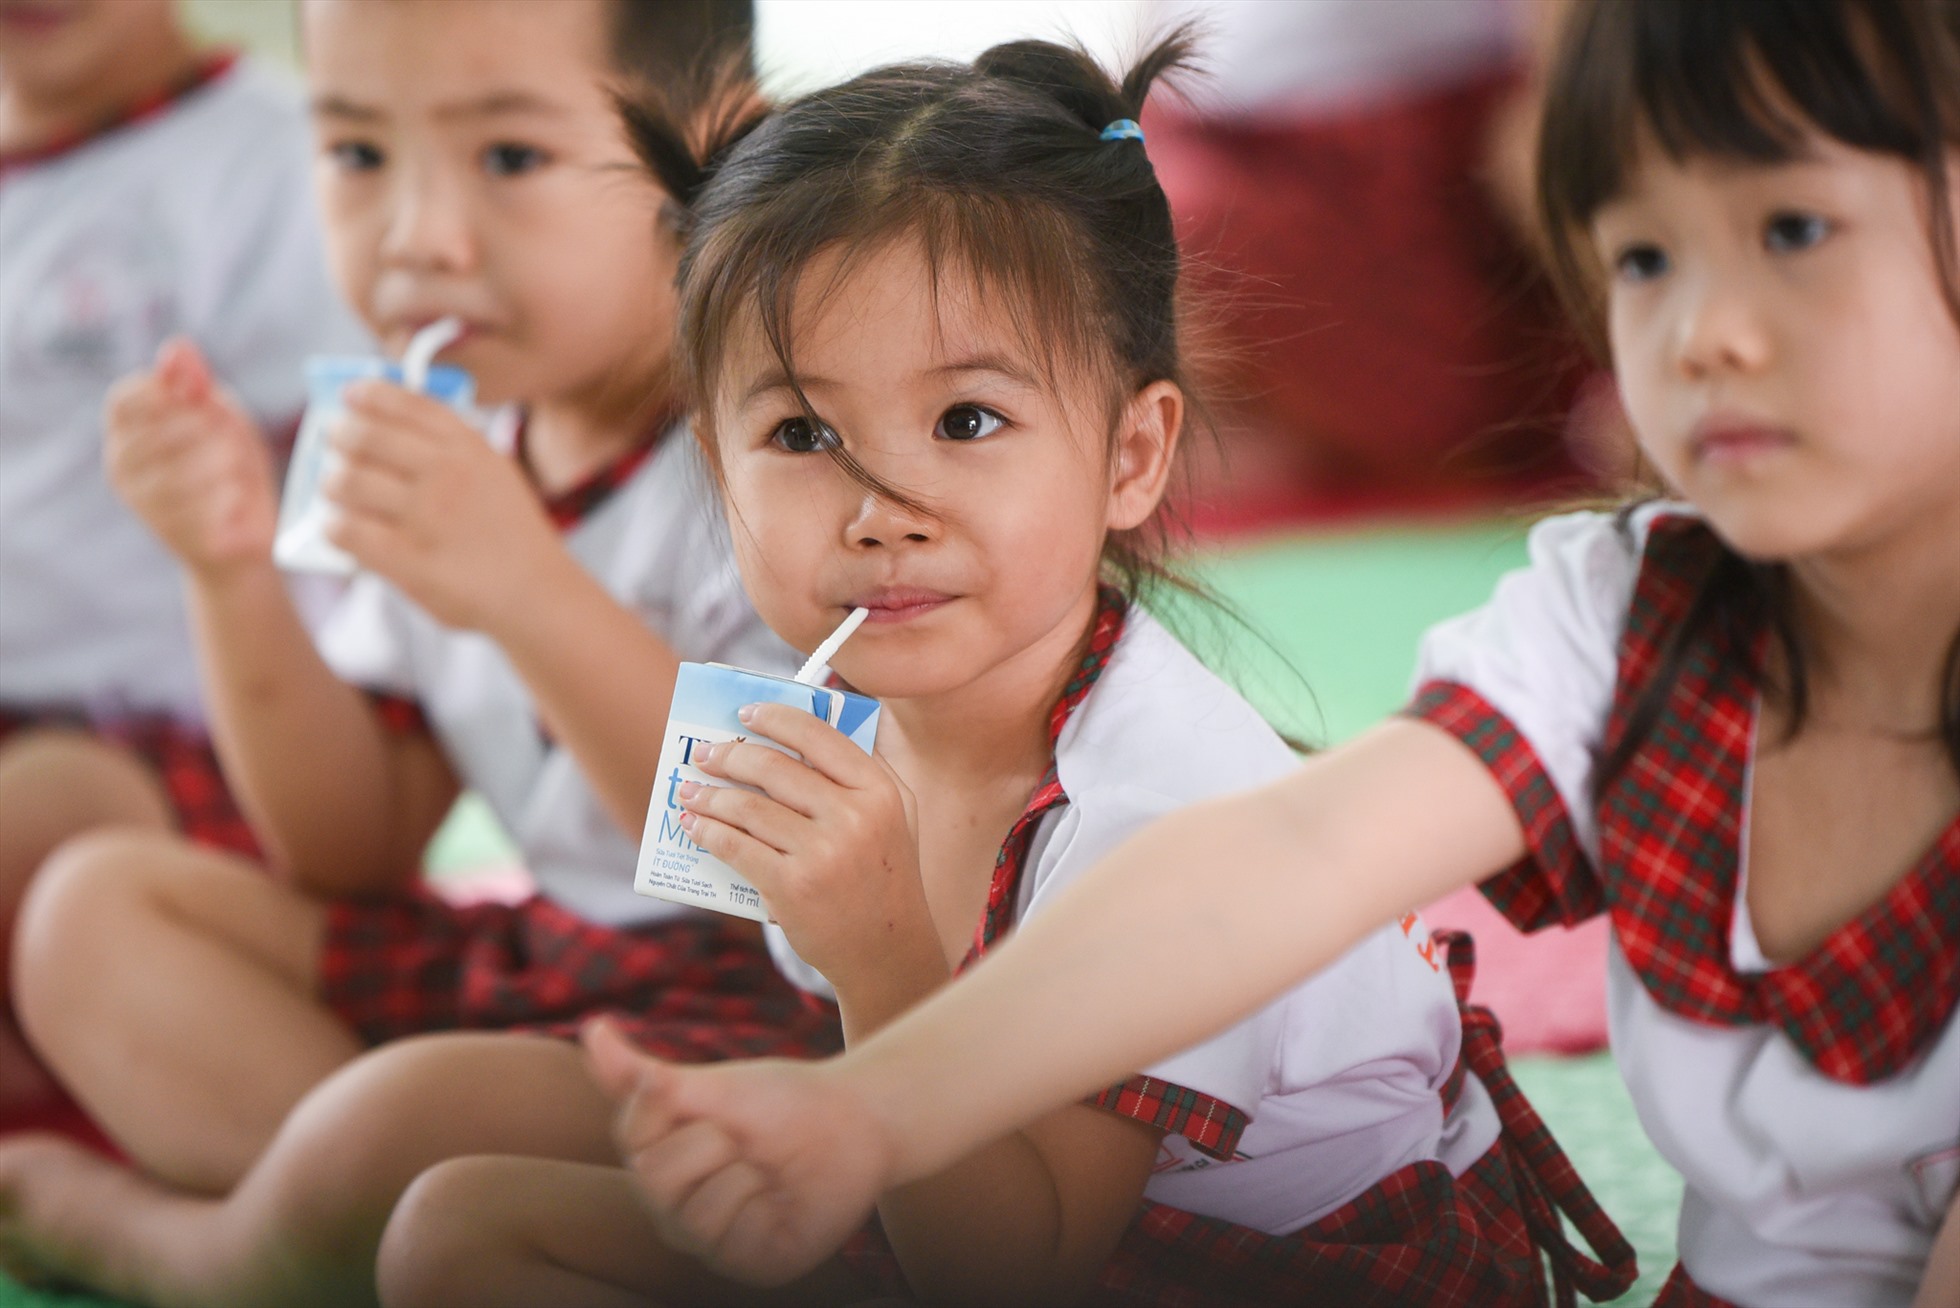 TH đồng hành cùng các chương trình sữa học đường, sức khỏe học đường, thể thao học đường nhằm nâng cao tầm vóc, thể lực cho trẻ em Việt Nam. Ảnh: Diệp Tử